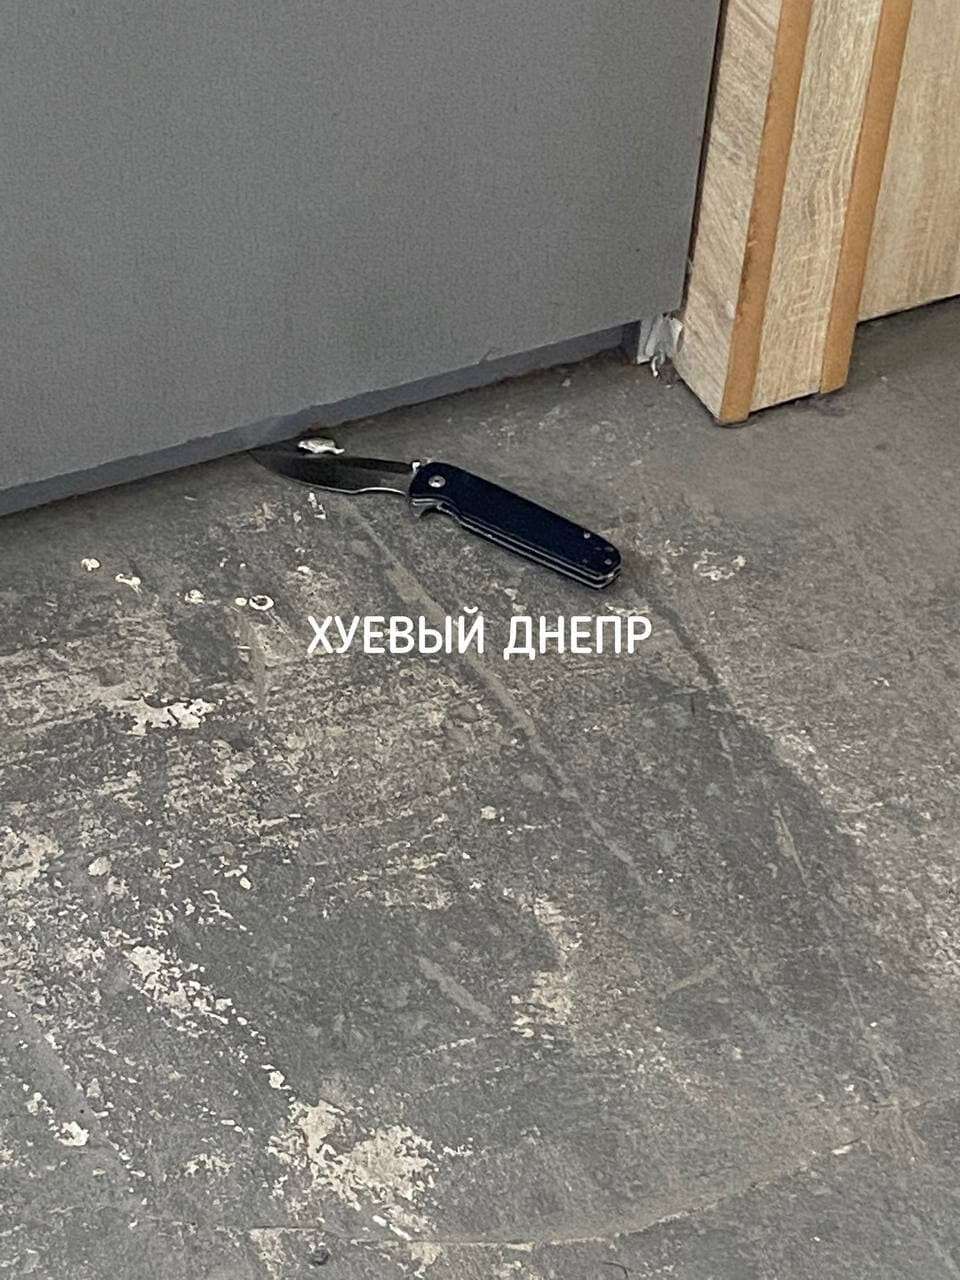 нож на полу